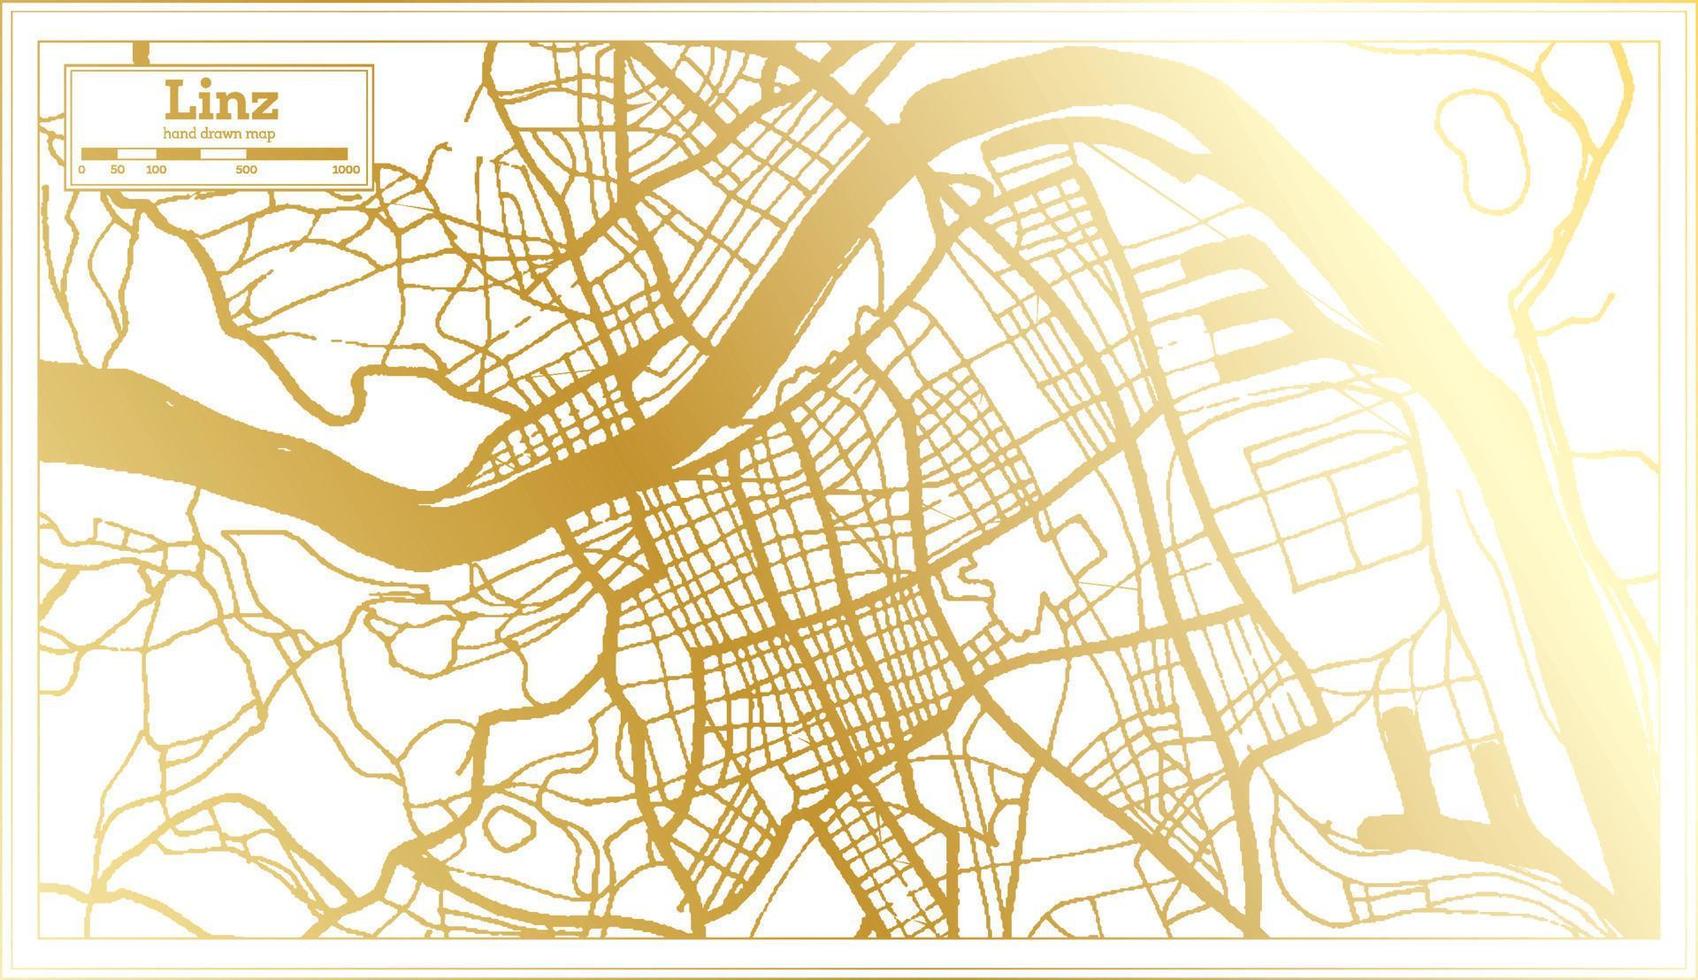 plan de la ville de linz autriche dans un style rétro de couleur dorée. carte muette. vecteur